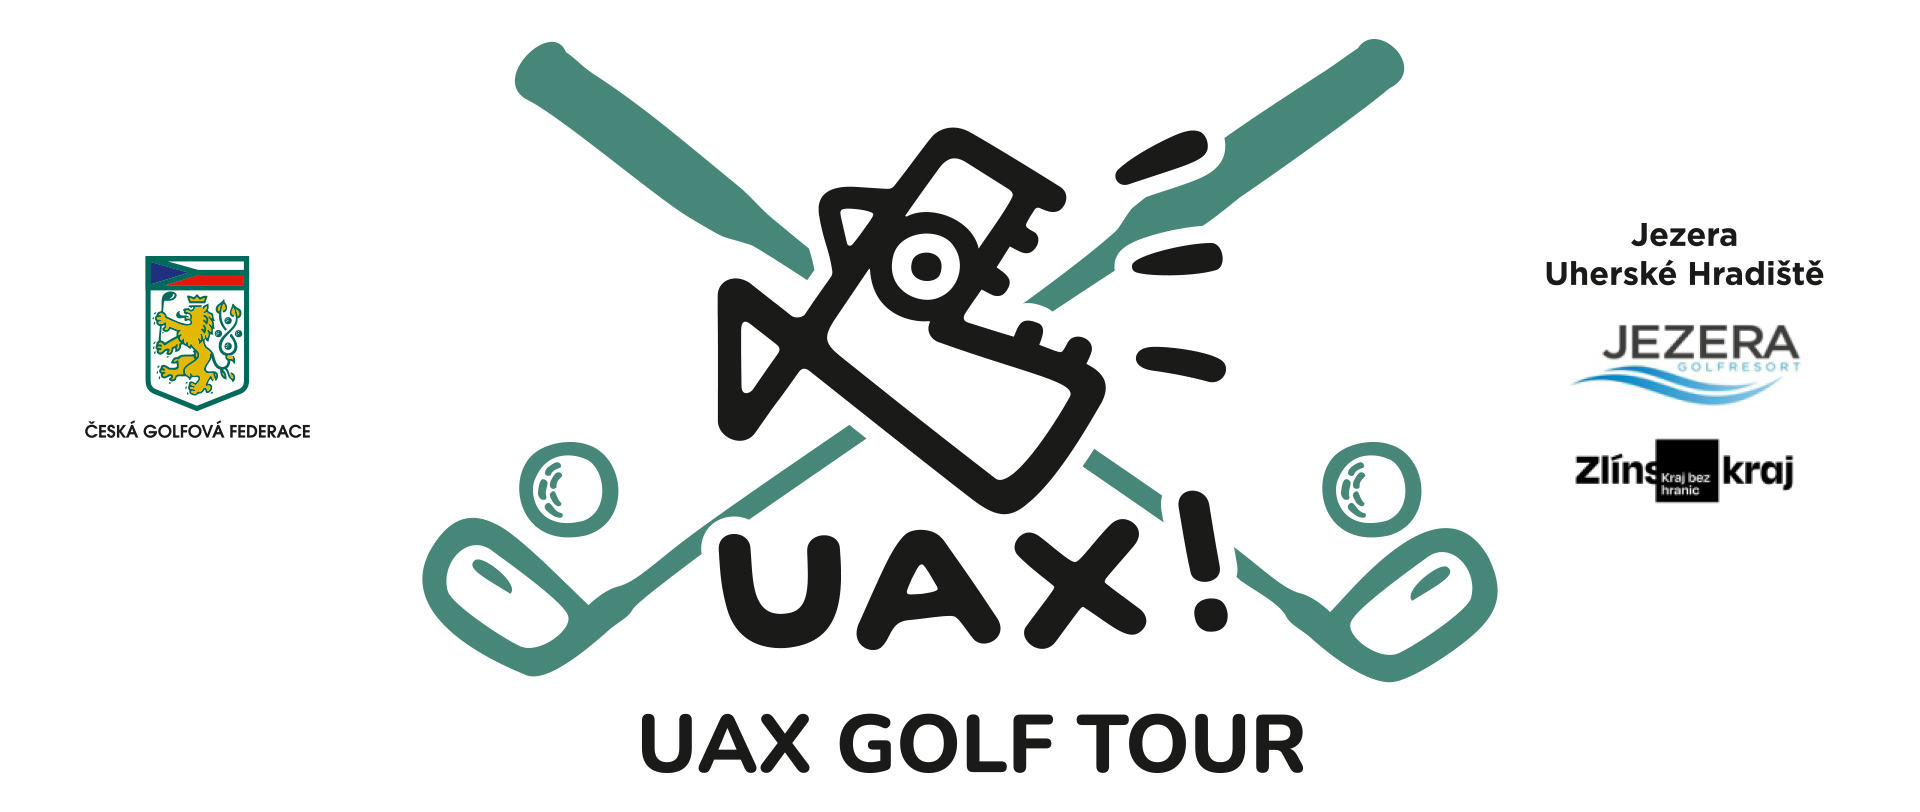 UAX Golf Tour Jezera